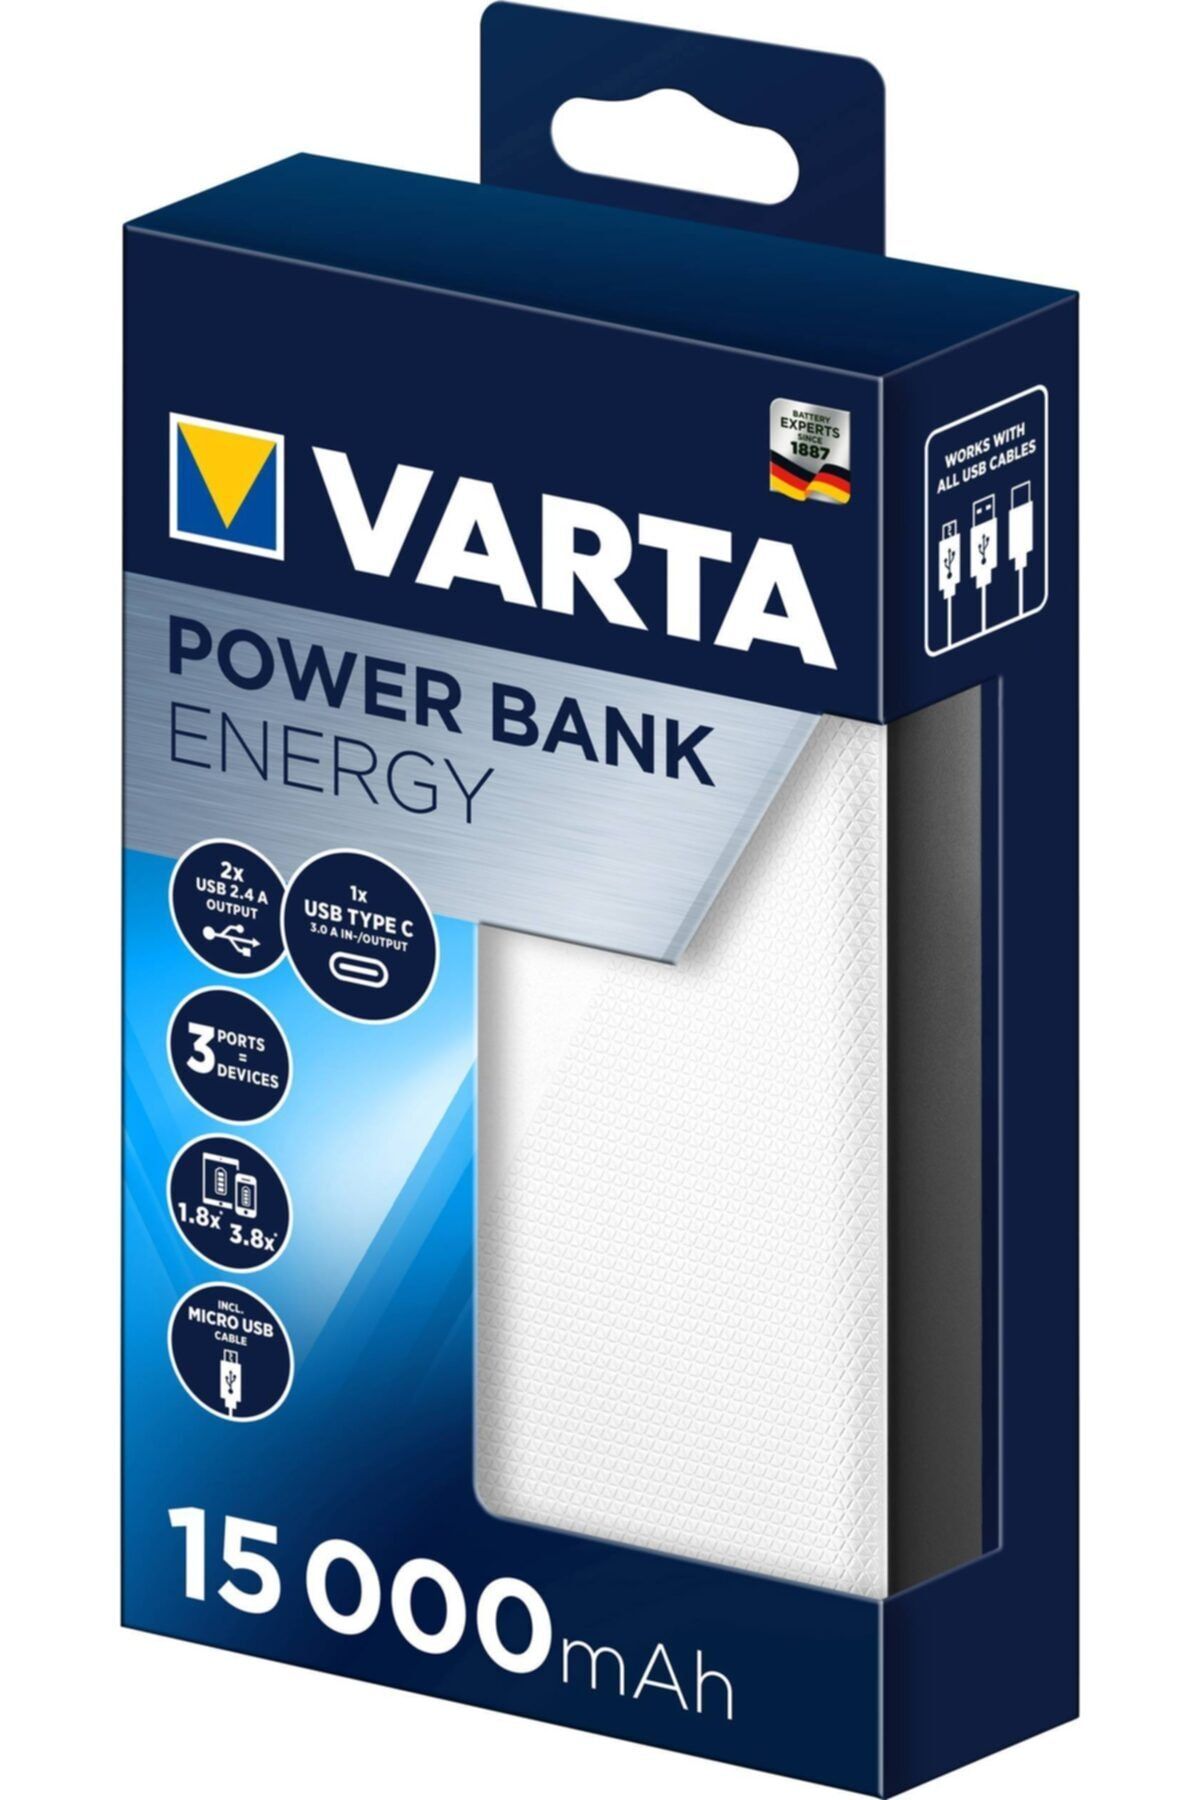 Varta Power Bank Energy 15000 Mah